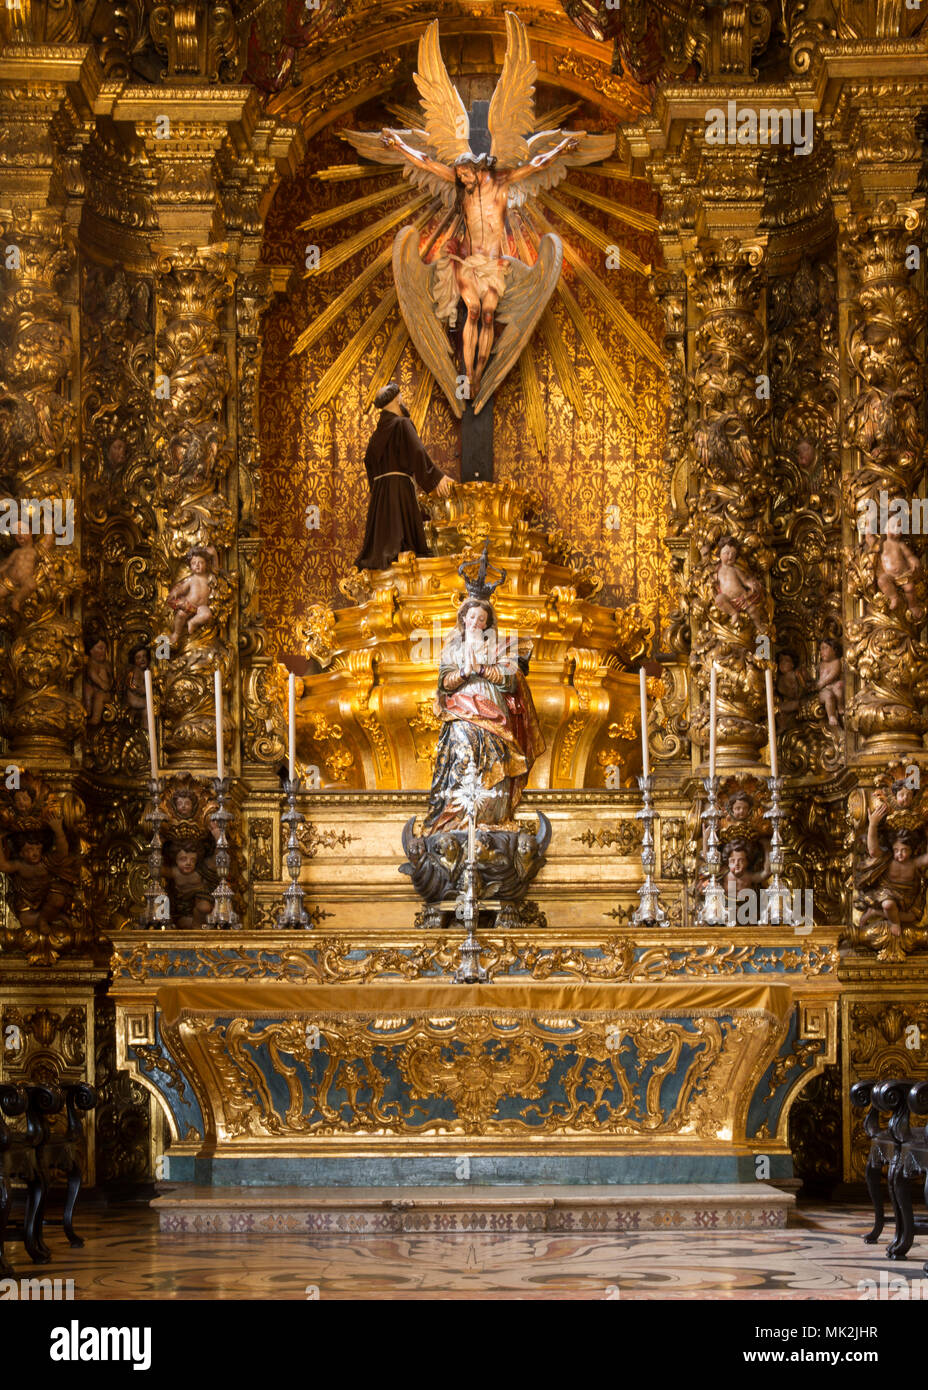 L'intérieur de la 18e siècle rococo portugais de l'église Sao Francisco da Penitencia (St Francis de pénitence) sculpté par Francisco Xavier de Brito Banque D'Images